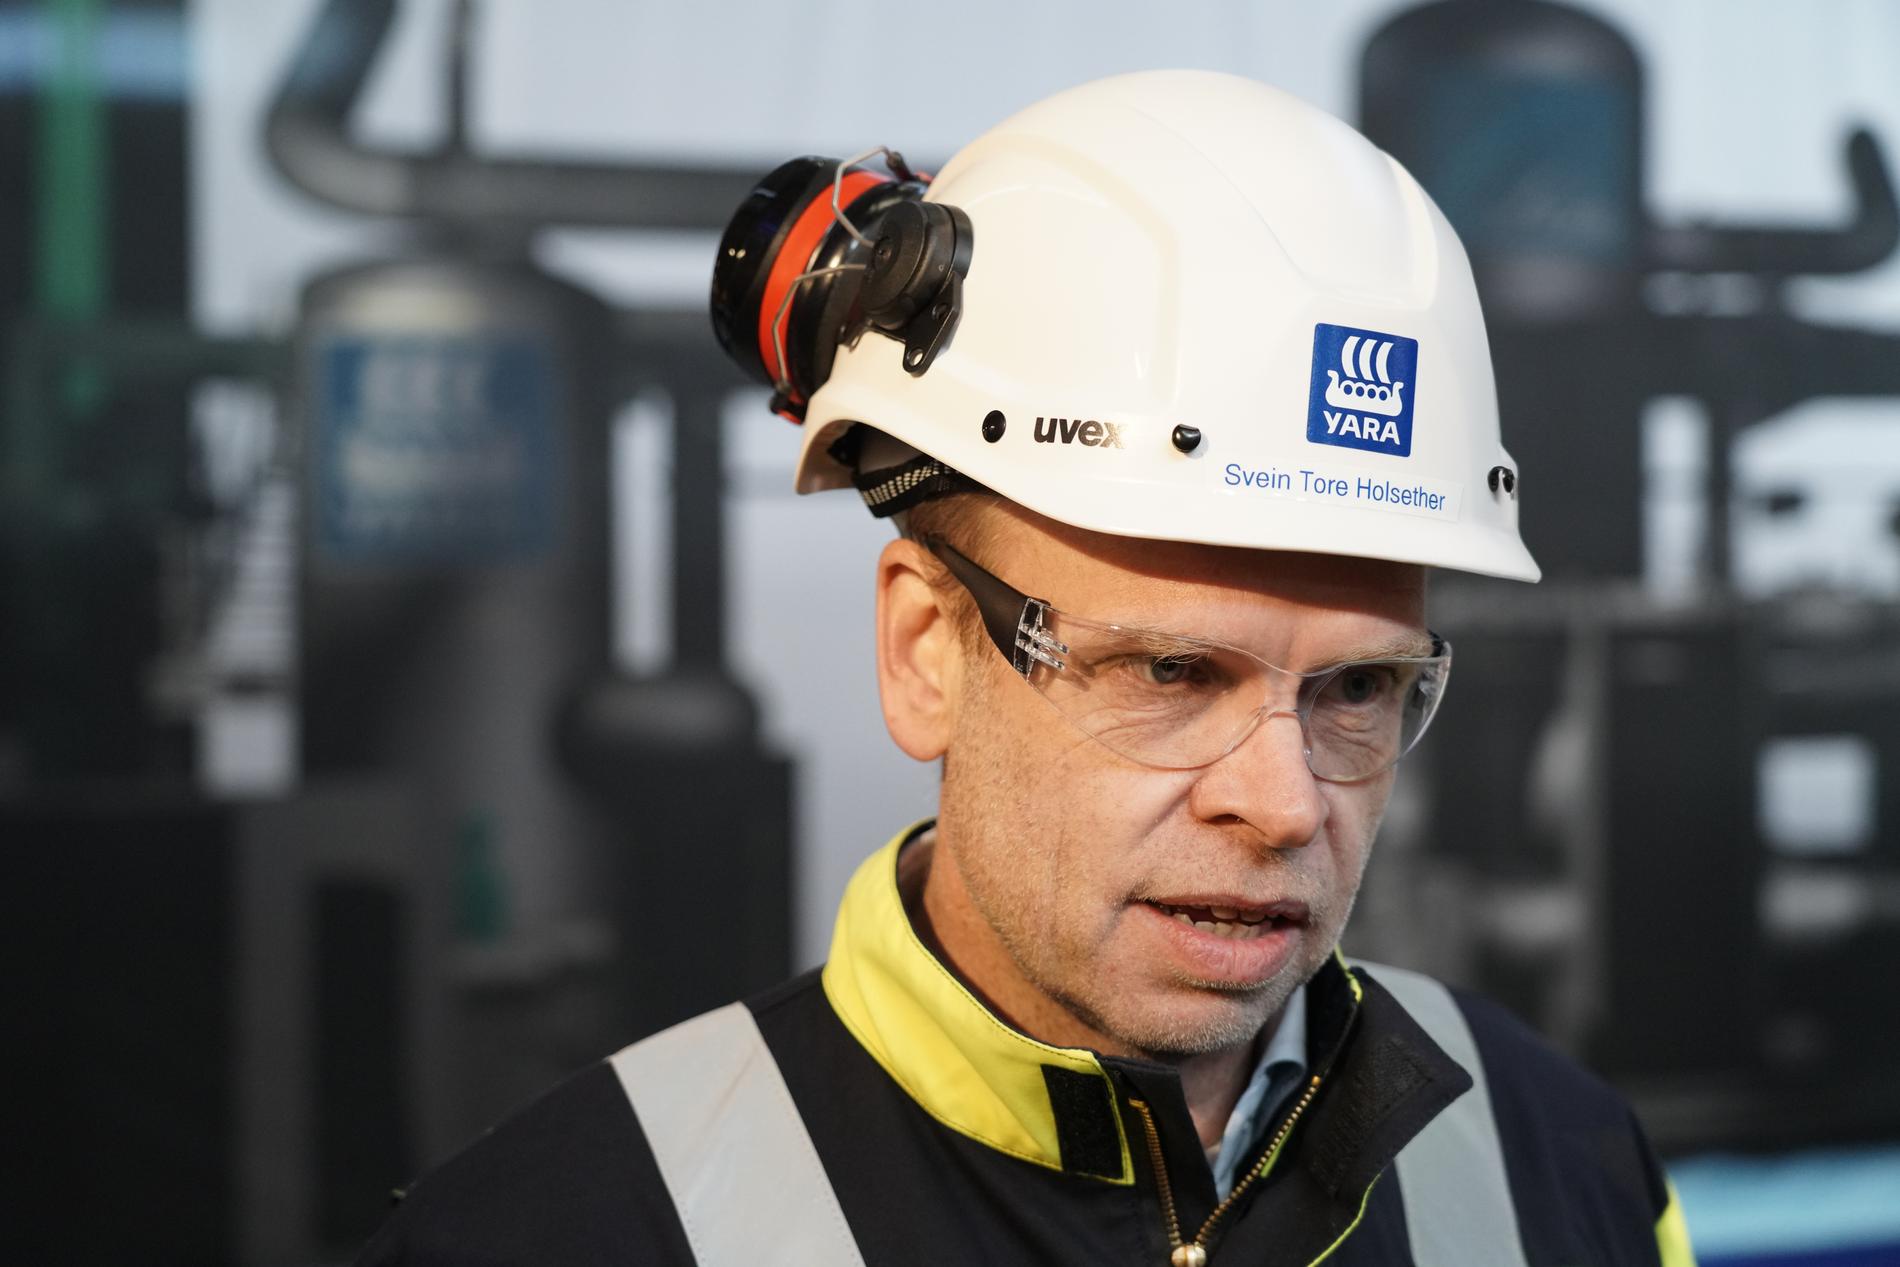 I 2023 tok Yara og konsernsjef Svein Tore Holsether første spadetak for et demonstrasjonsprosjekt for produksjon av grønn ammoniakk i Porsgrunn. Selskapet planlegger å skifte ut bruken av gass med strøm på hele anlegget, og dette vil kreve om lag 4 TWh strøm pr. år.